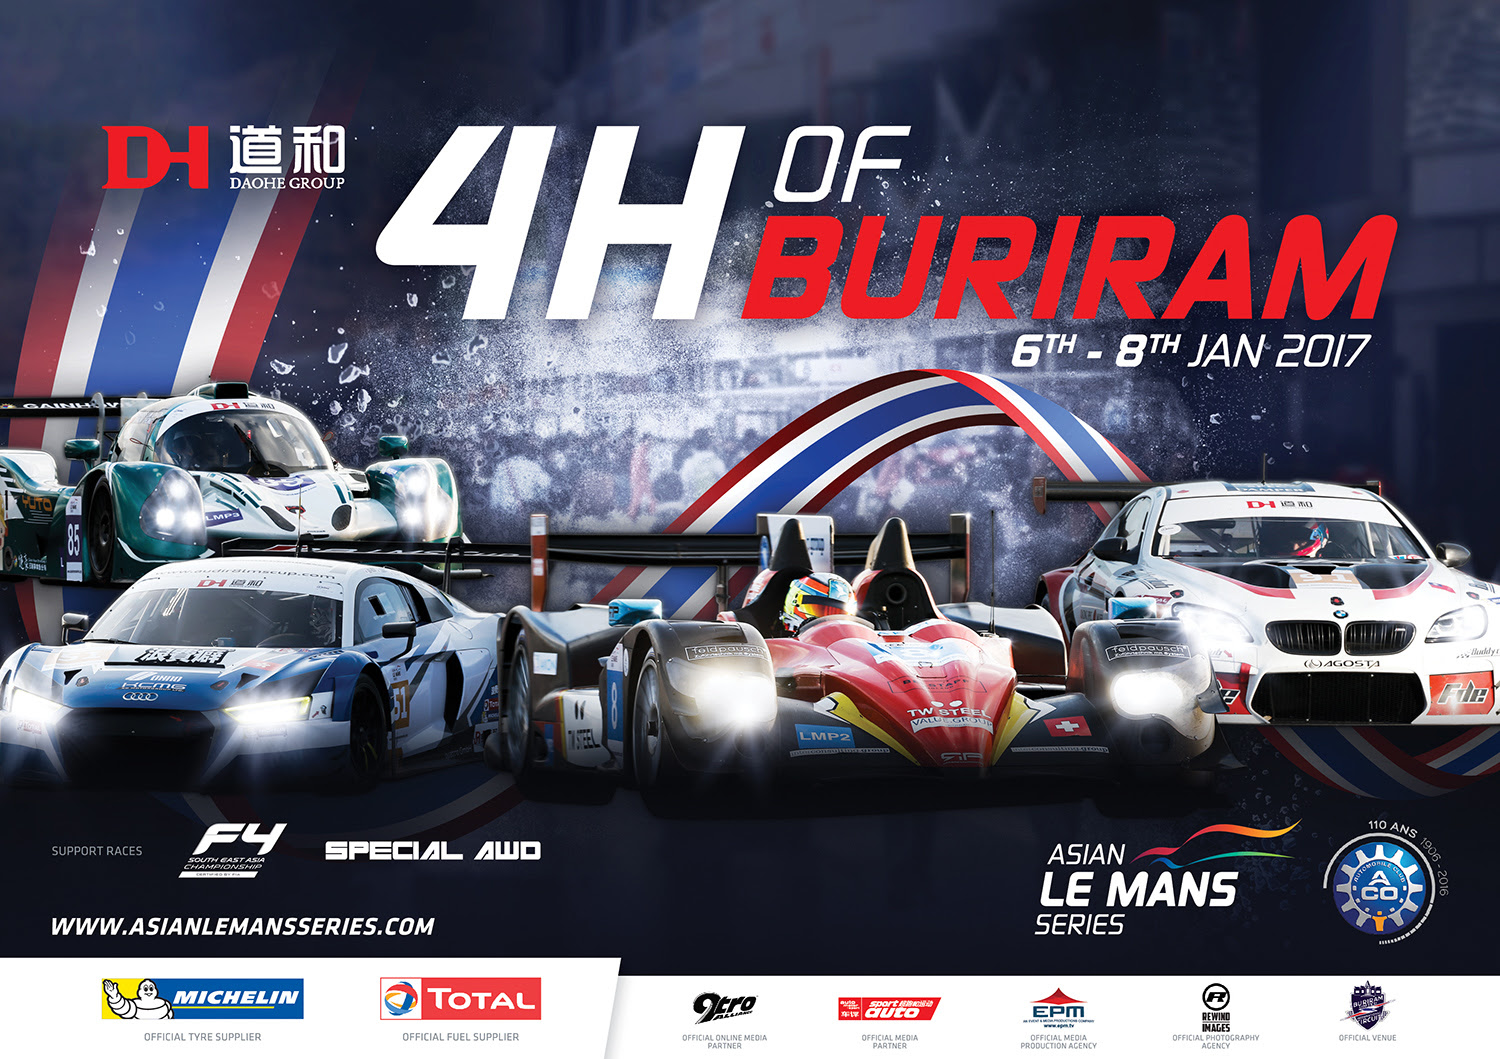 Asian Le Mans Series com 27 carros para Buriram